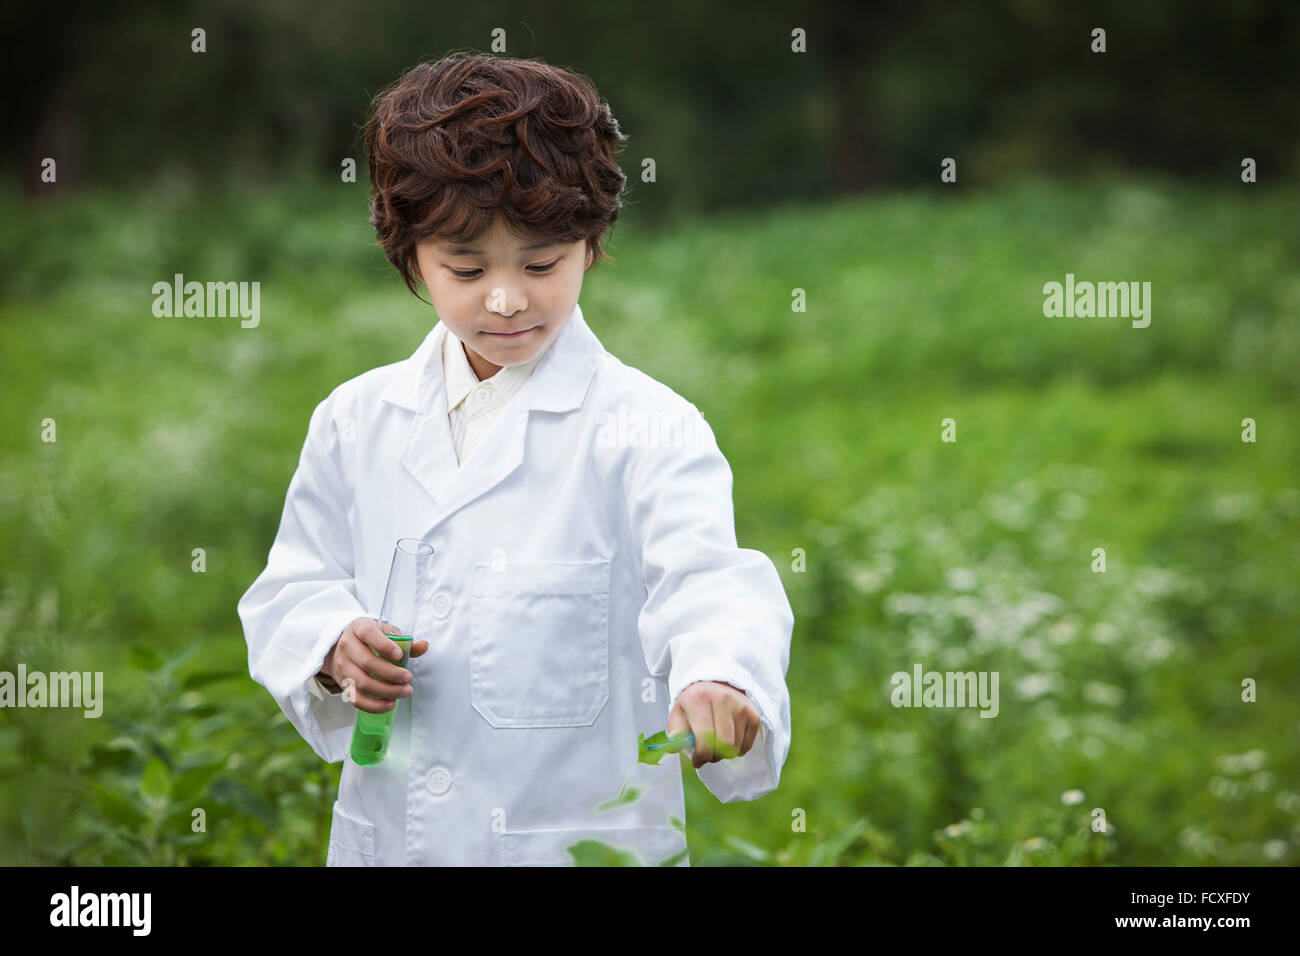 Junge im weißen Kleid hält ein Reagenzglas und ein Blatt und blickte auf Feld Stockfoto